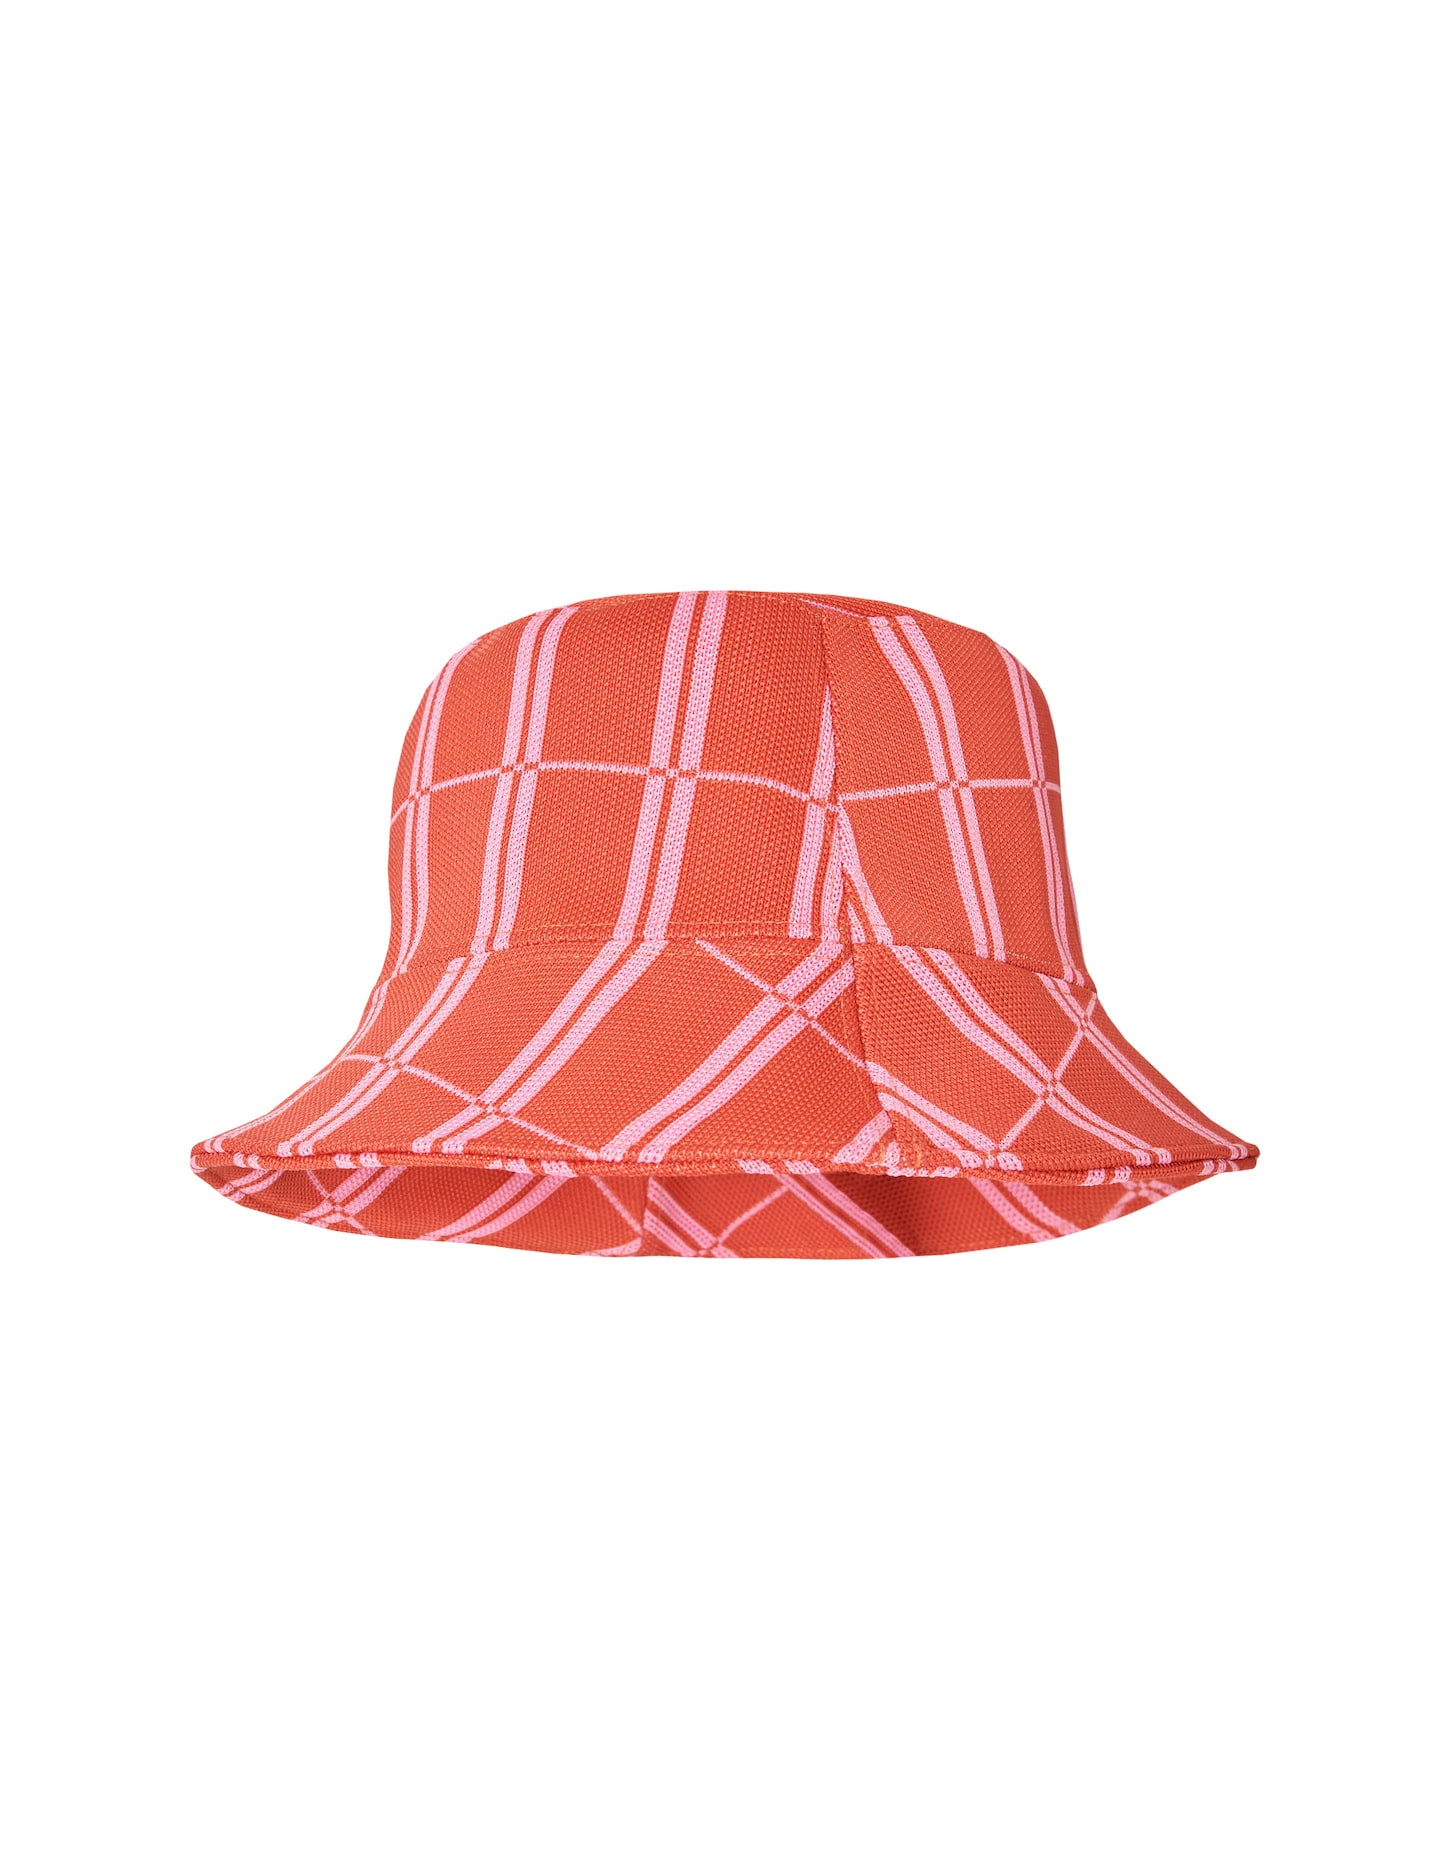 Barklie hat (Scarlet)